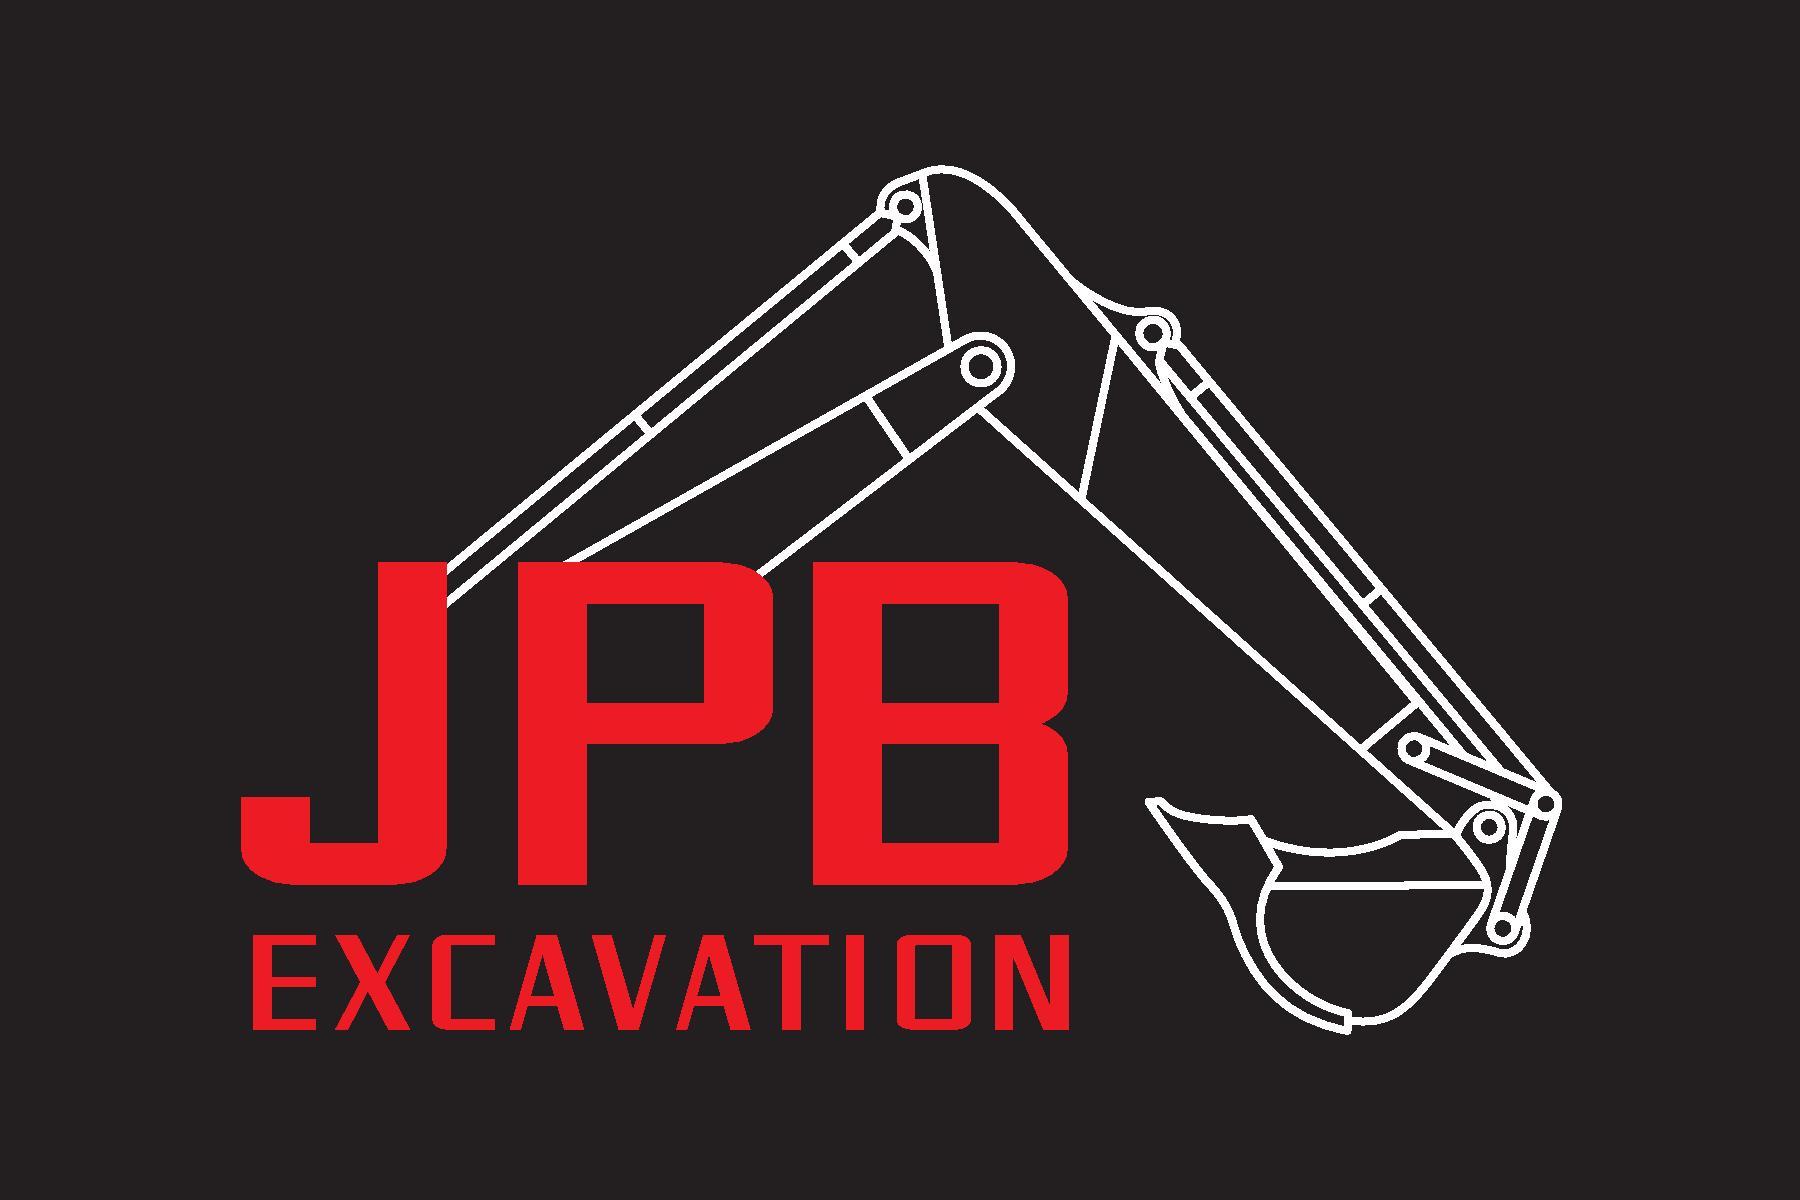 JPB Excavation